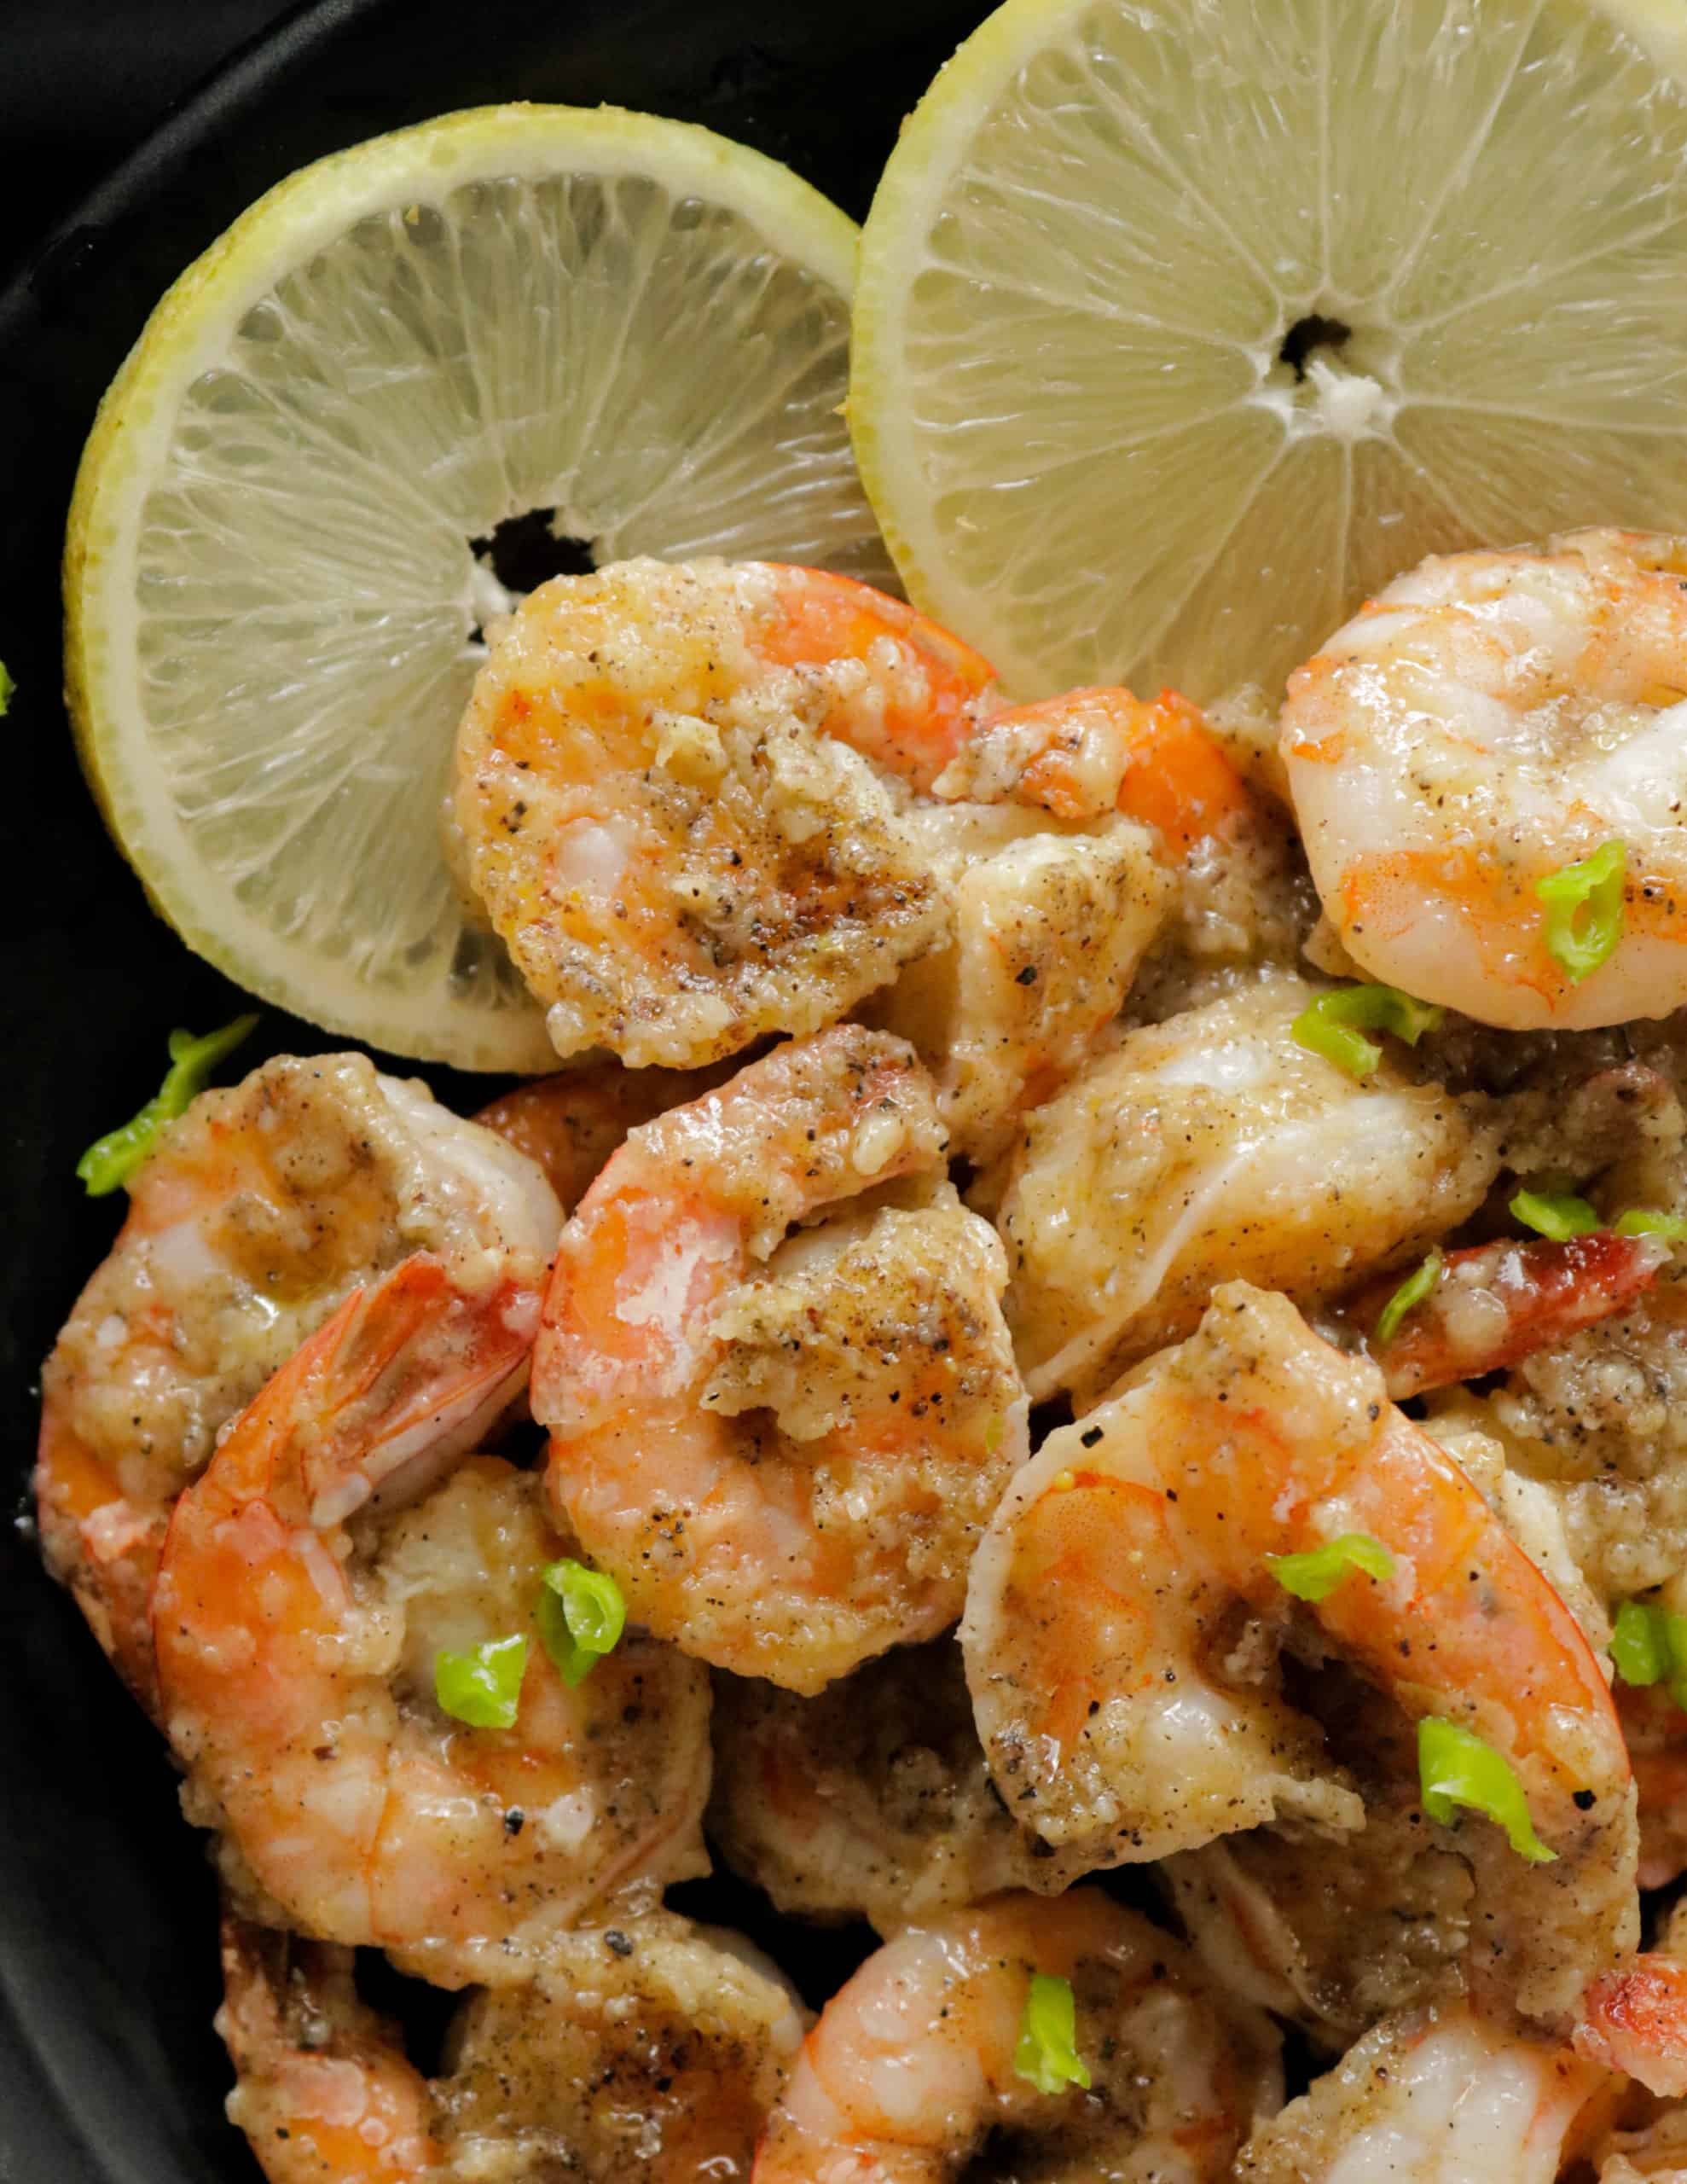 Lemon pepper shrimp in 15 minutes. - THE SEAFOOD BLOG